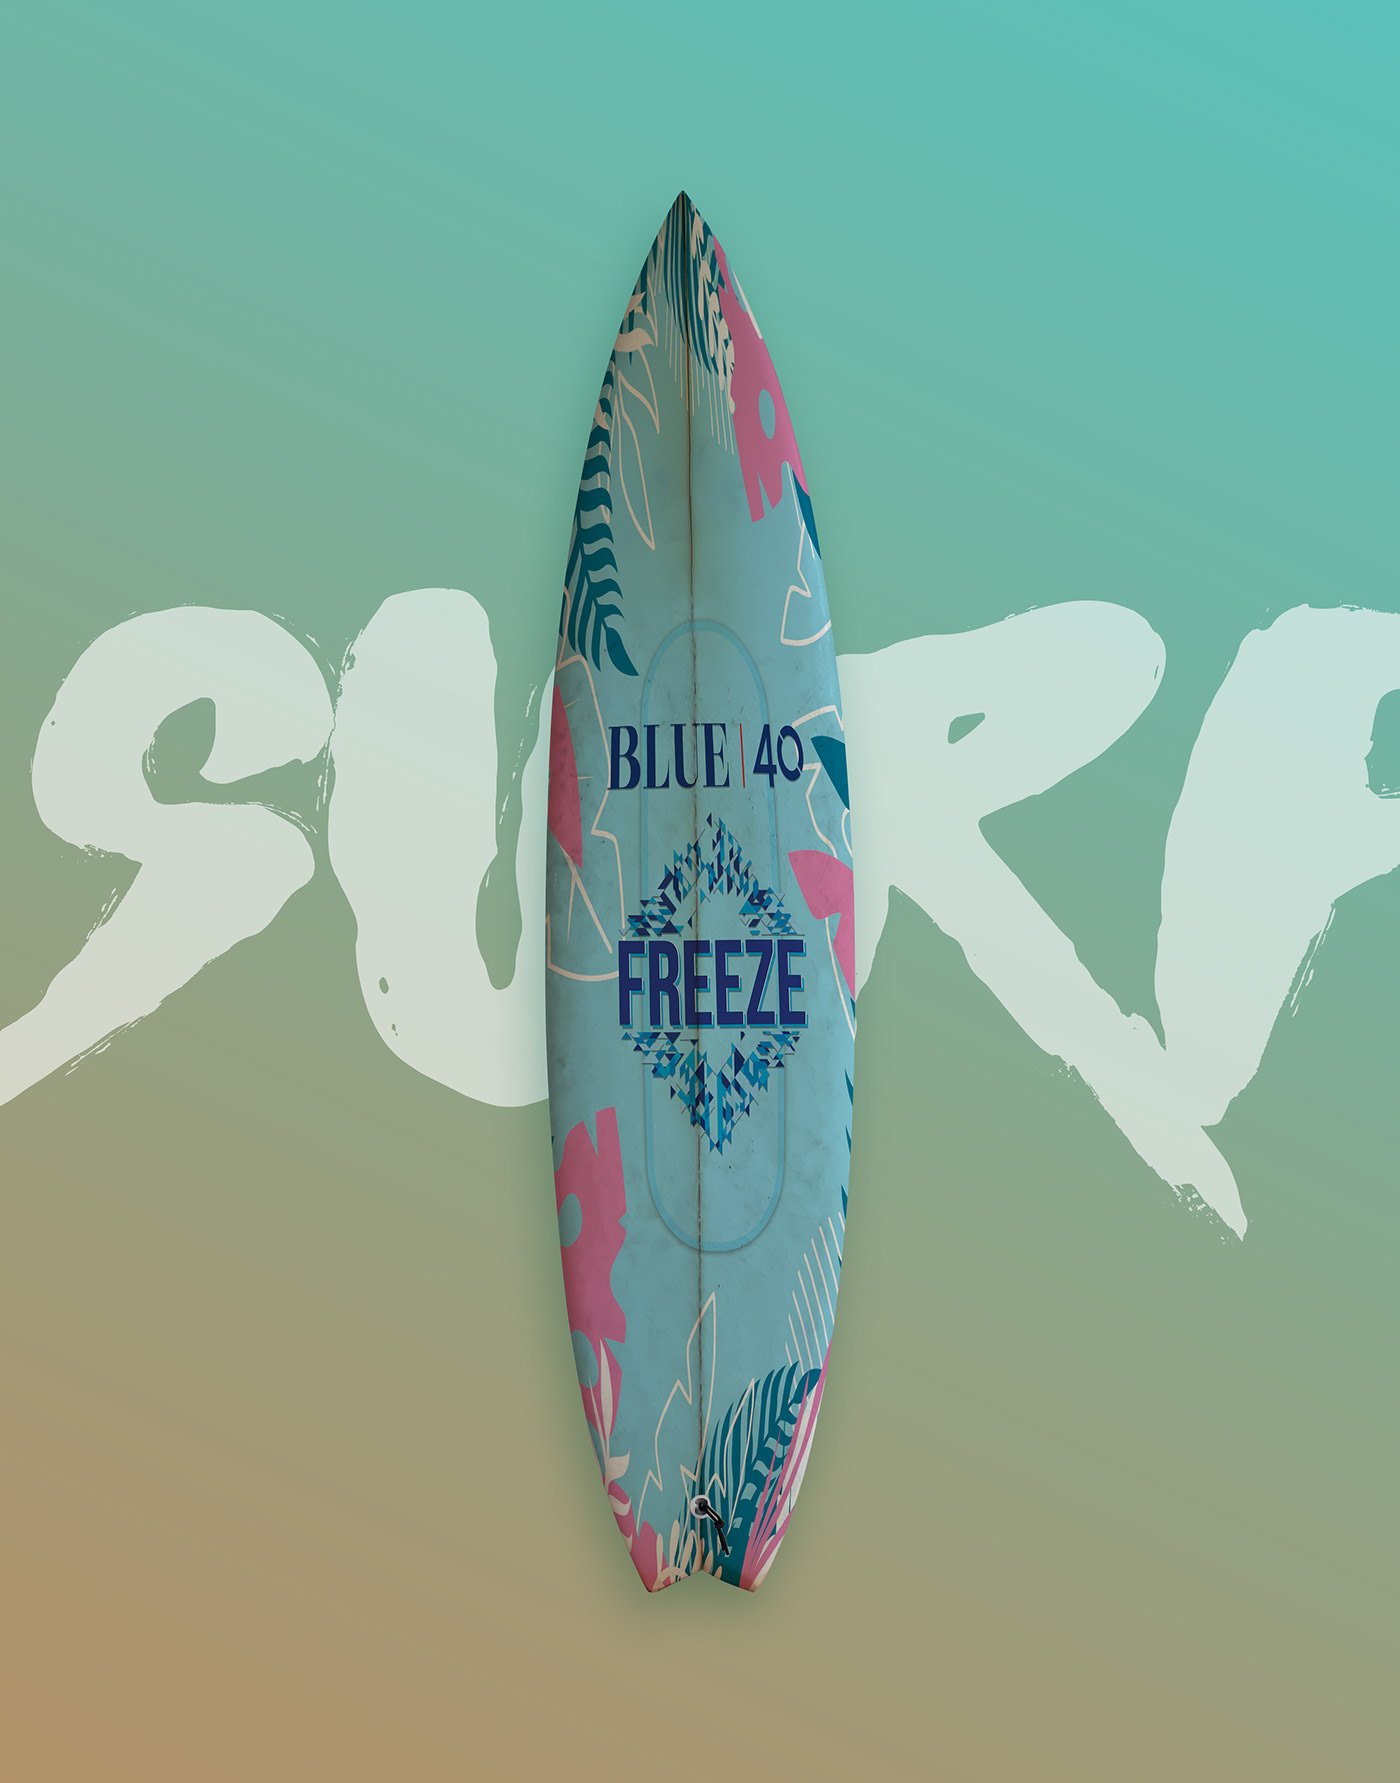 surfing surfboard surf design branding  identity adobe illustrator product design  industrial desperados blue40